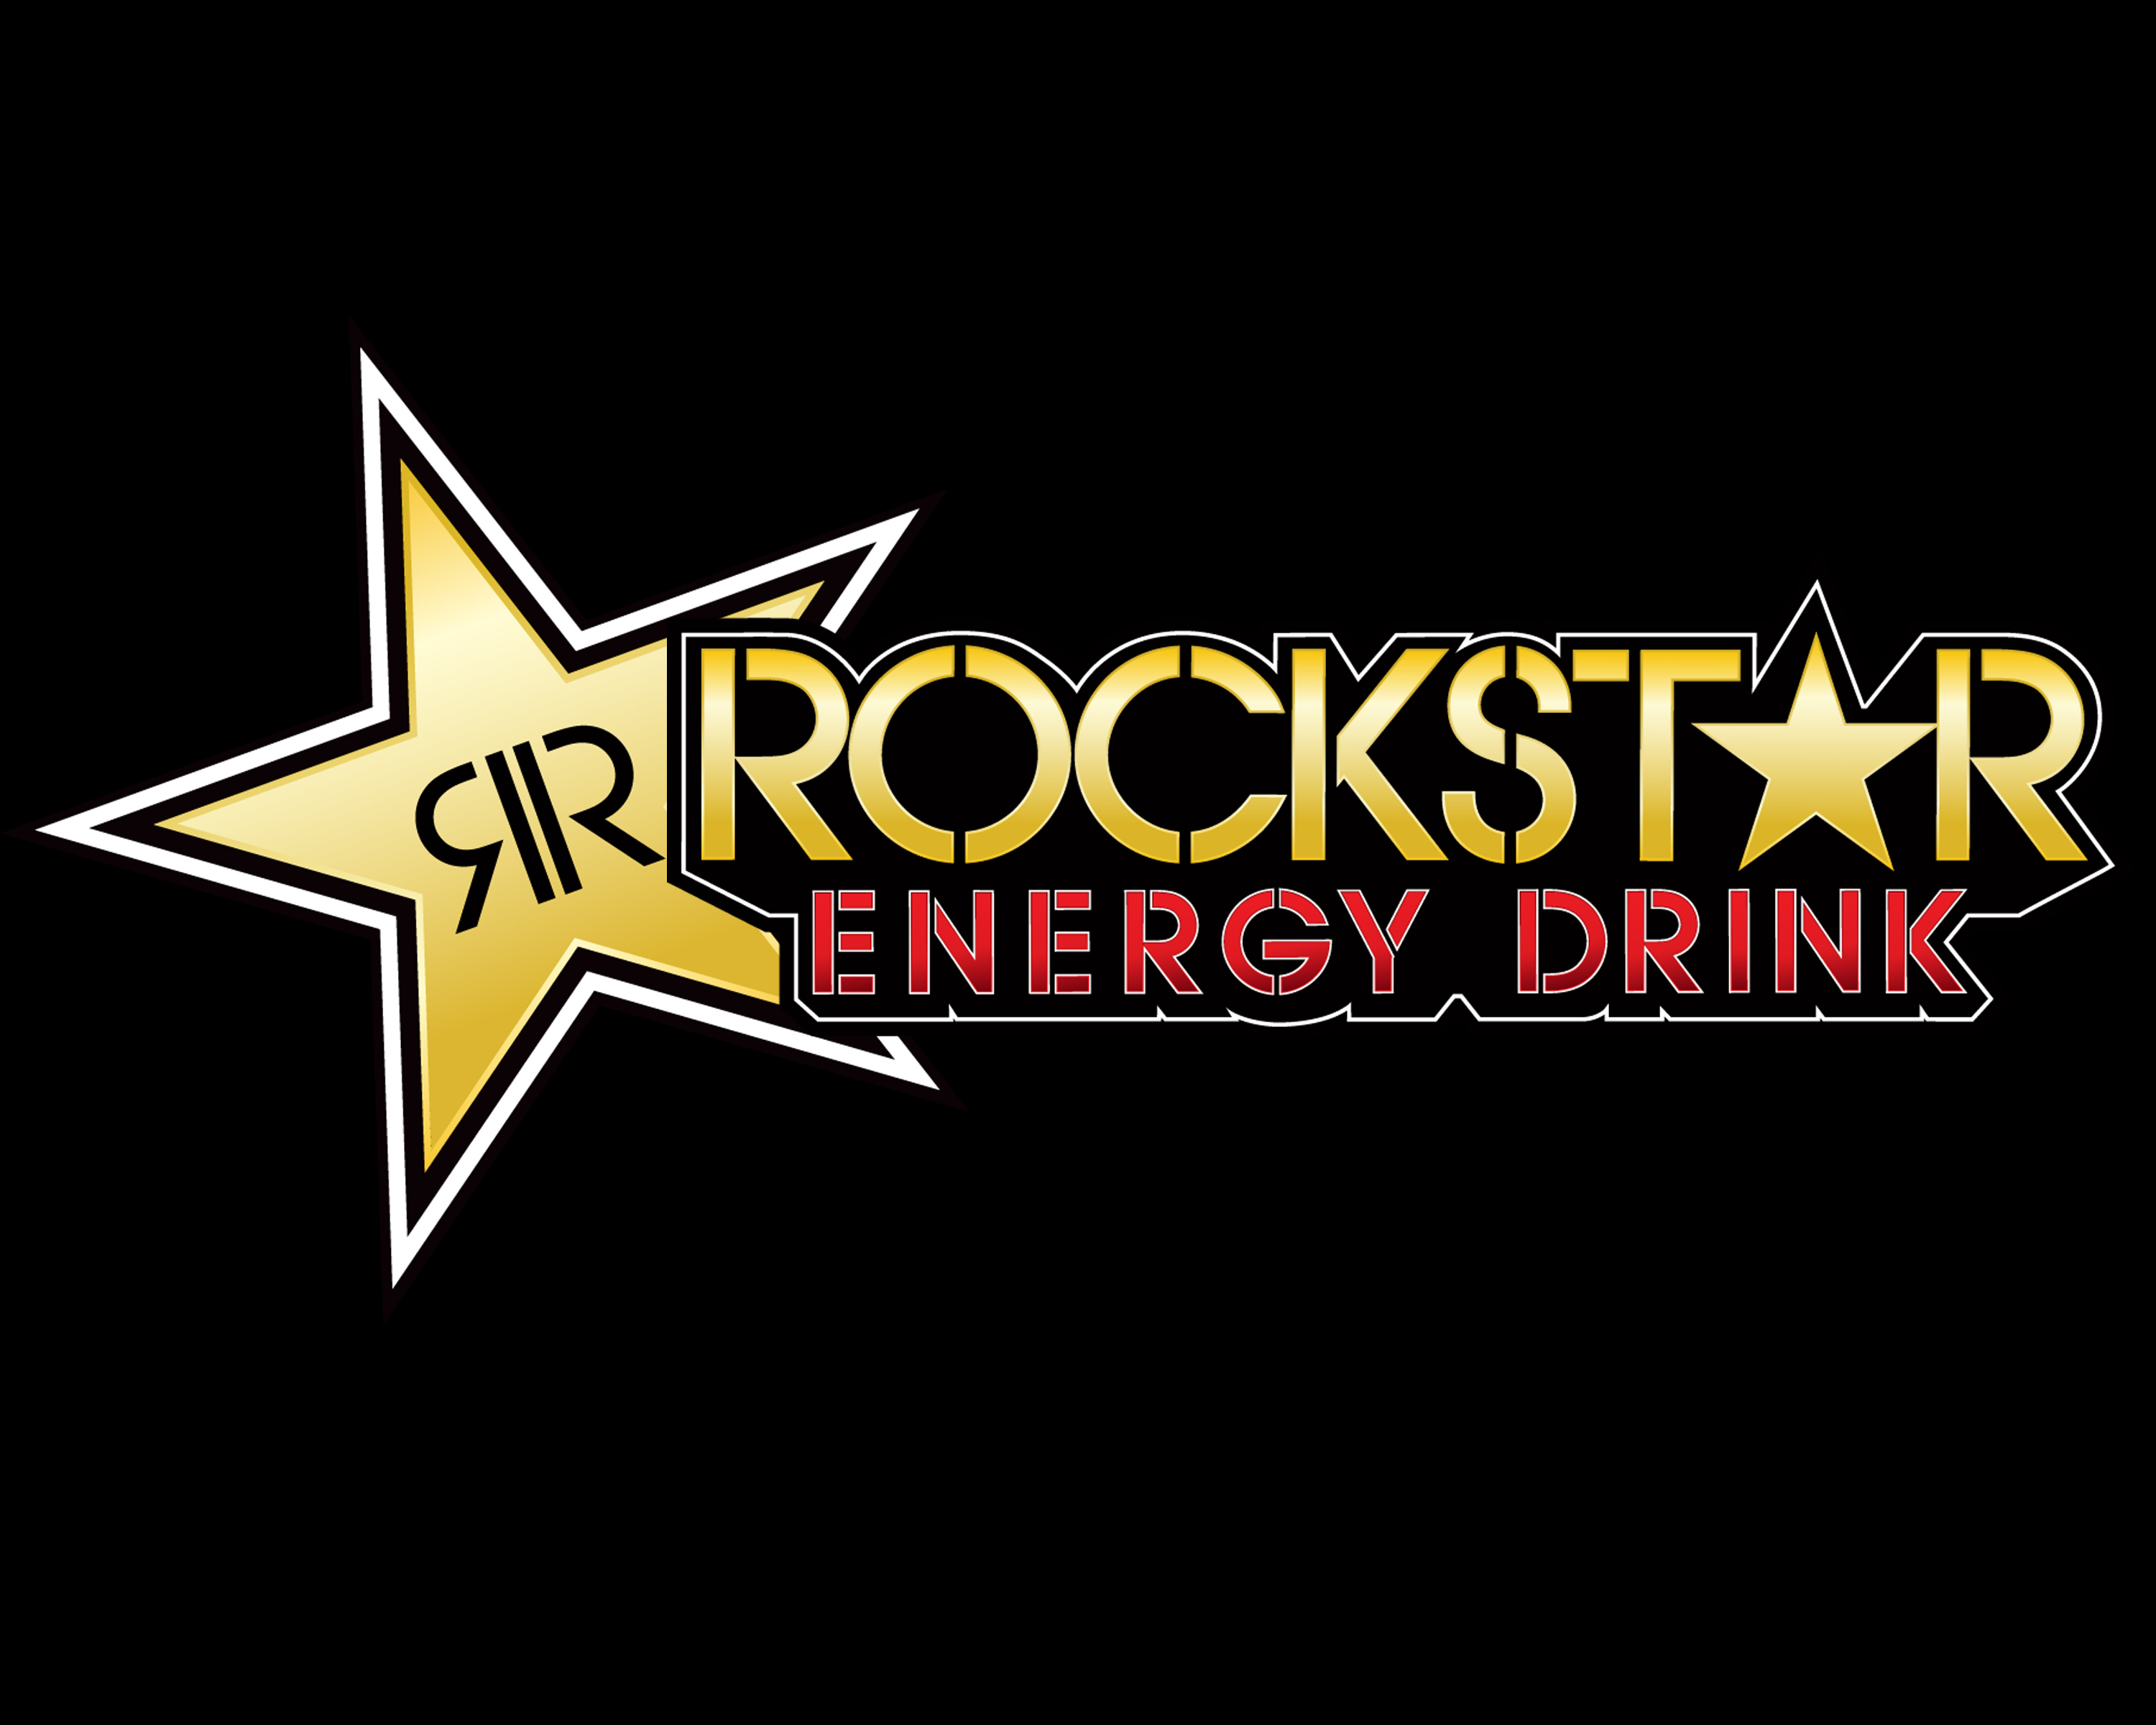 Wallpaper Rockstar Energy Drink